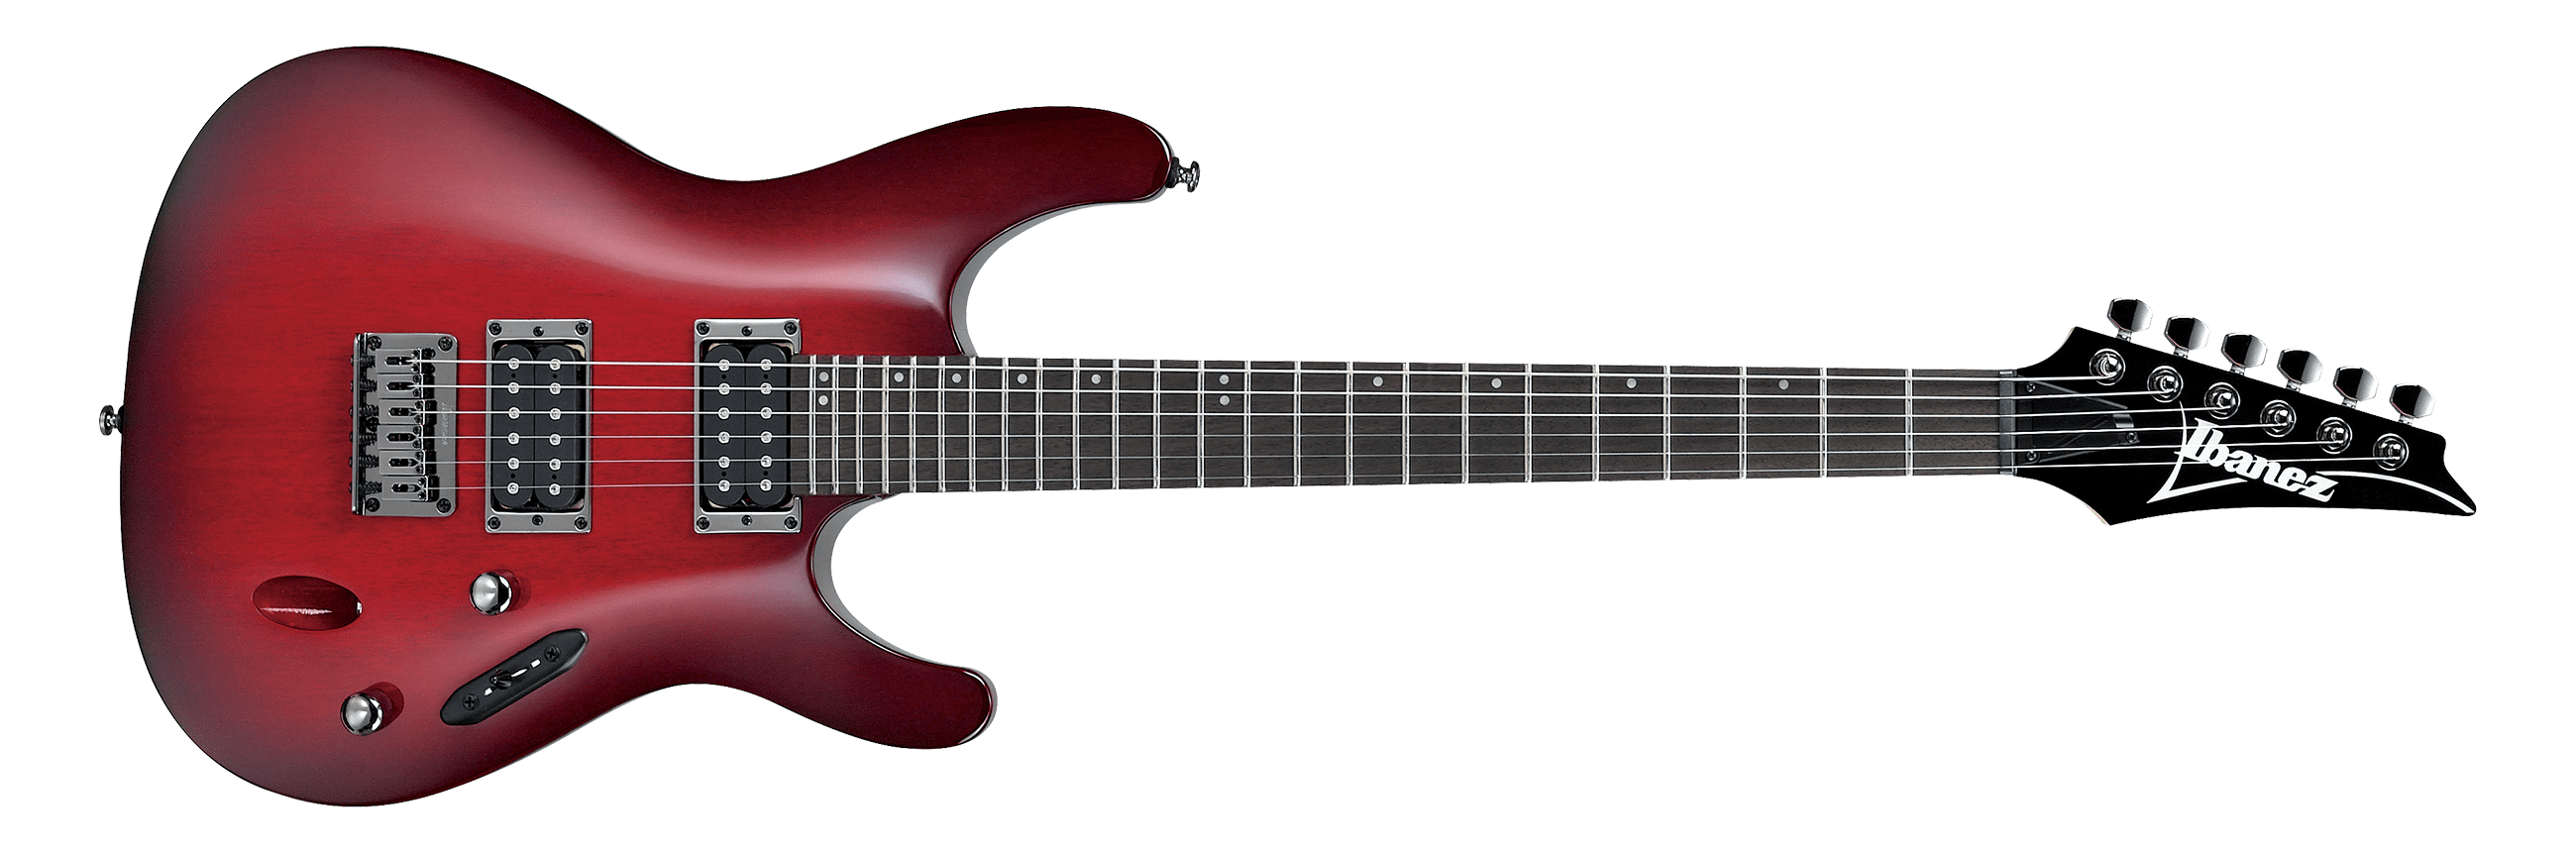 Ibanez S521-BBS 6 String Right Handed Electric Guitar BBS-Blackberry Sunburst